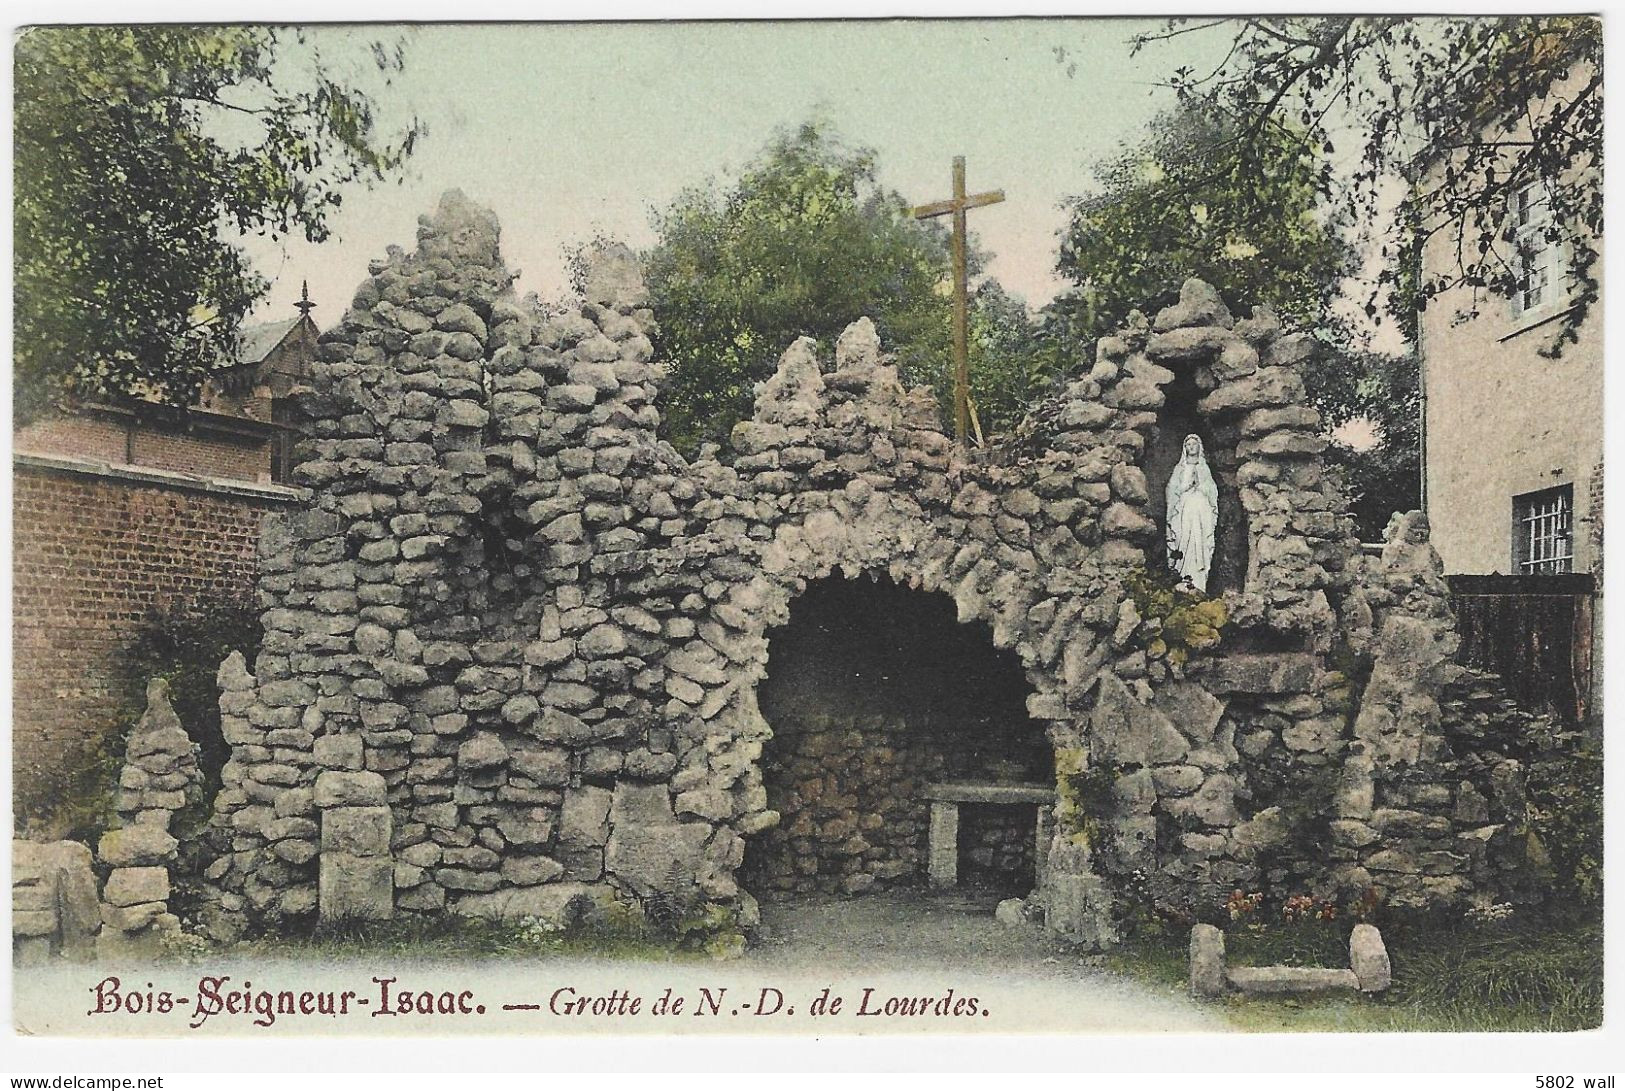 BOIS-SEIGNEUR-ISAAC : Grotte N-D De Lourdes - 1908 - Braine-l'Alleud